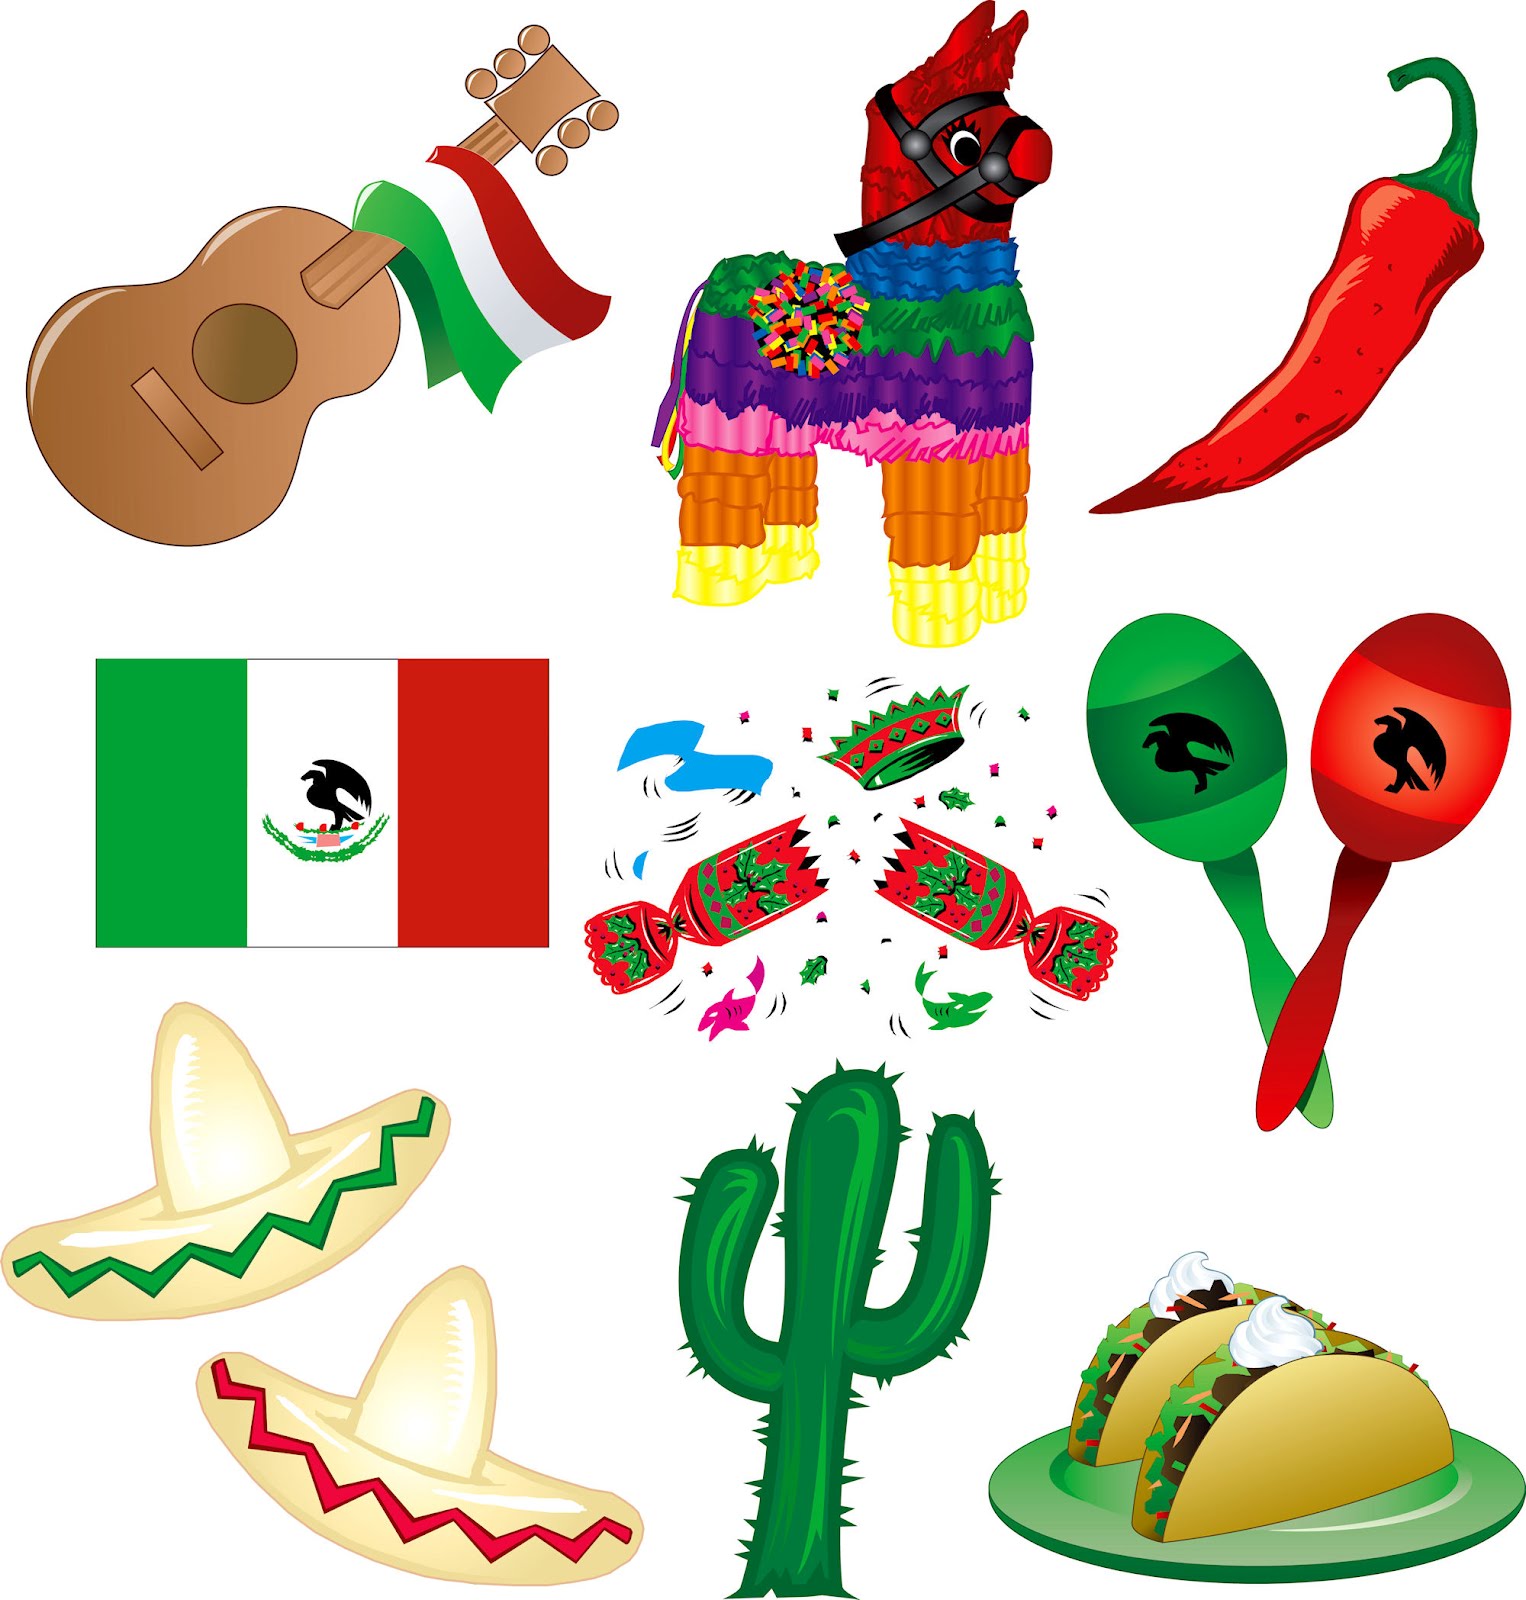 Banco de Imágenes Gratis: 20 imágenes gratis de los Símbolos Patrios de  México para festejar nuestra Independencia (16 de Septiembre)